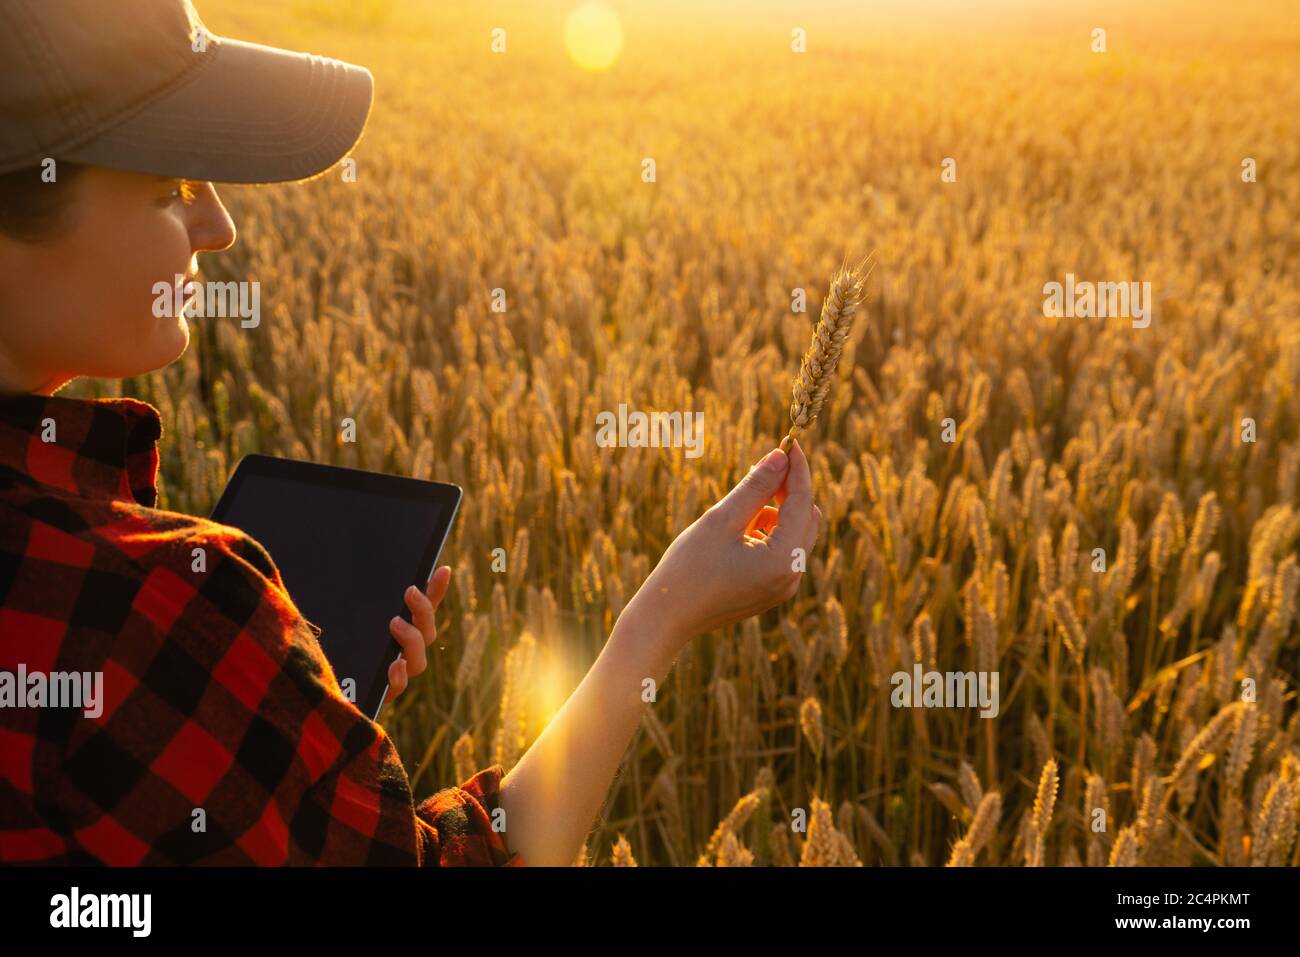 Una mujer campesina se encuentra en un campo agrícola al atardecer y mira una oreja de trigo. Foto de stock